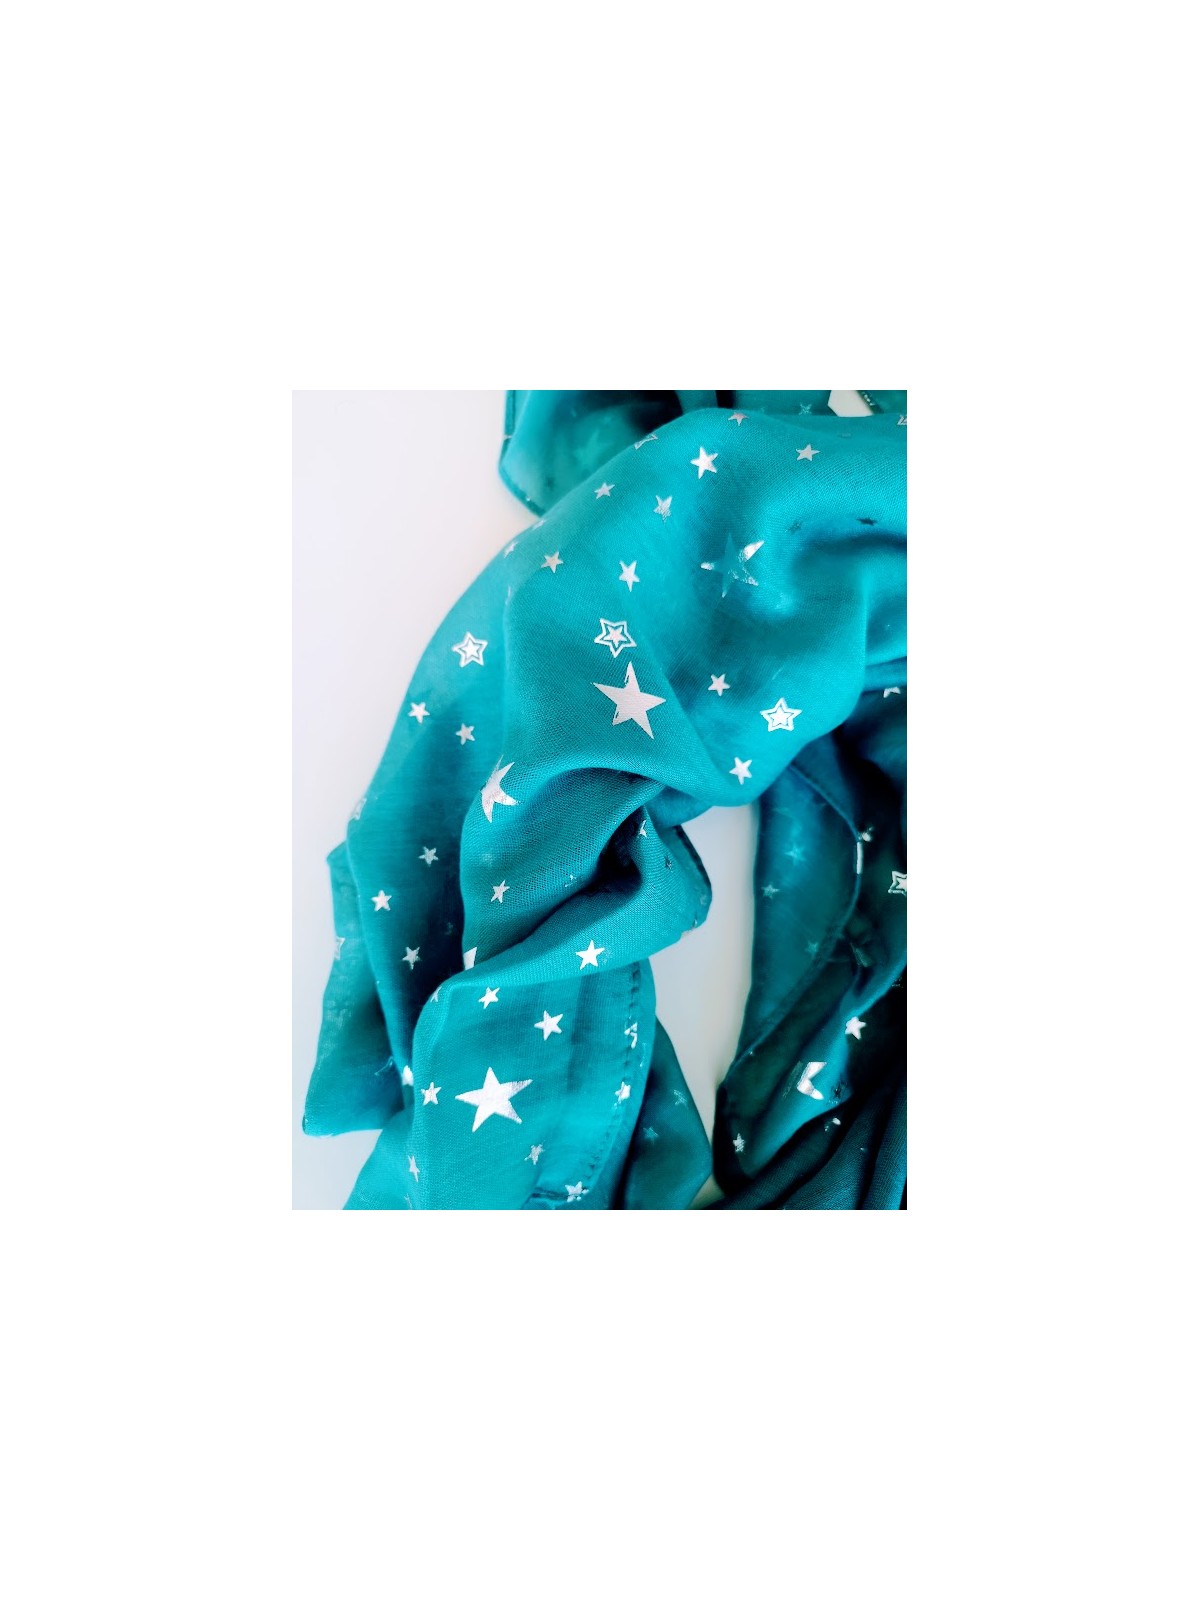 Foulard bleu canard et blanc avec étoiles l 2 vue rapprochée l Tilleulmenthe mode boutique de vêtements femme en ligne